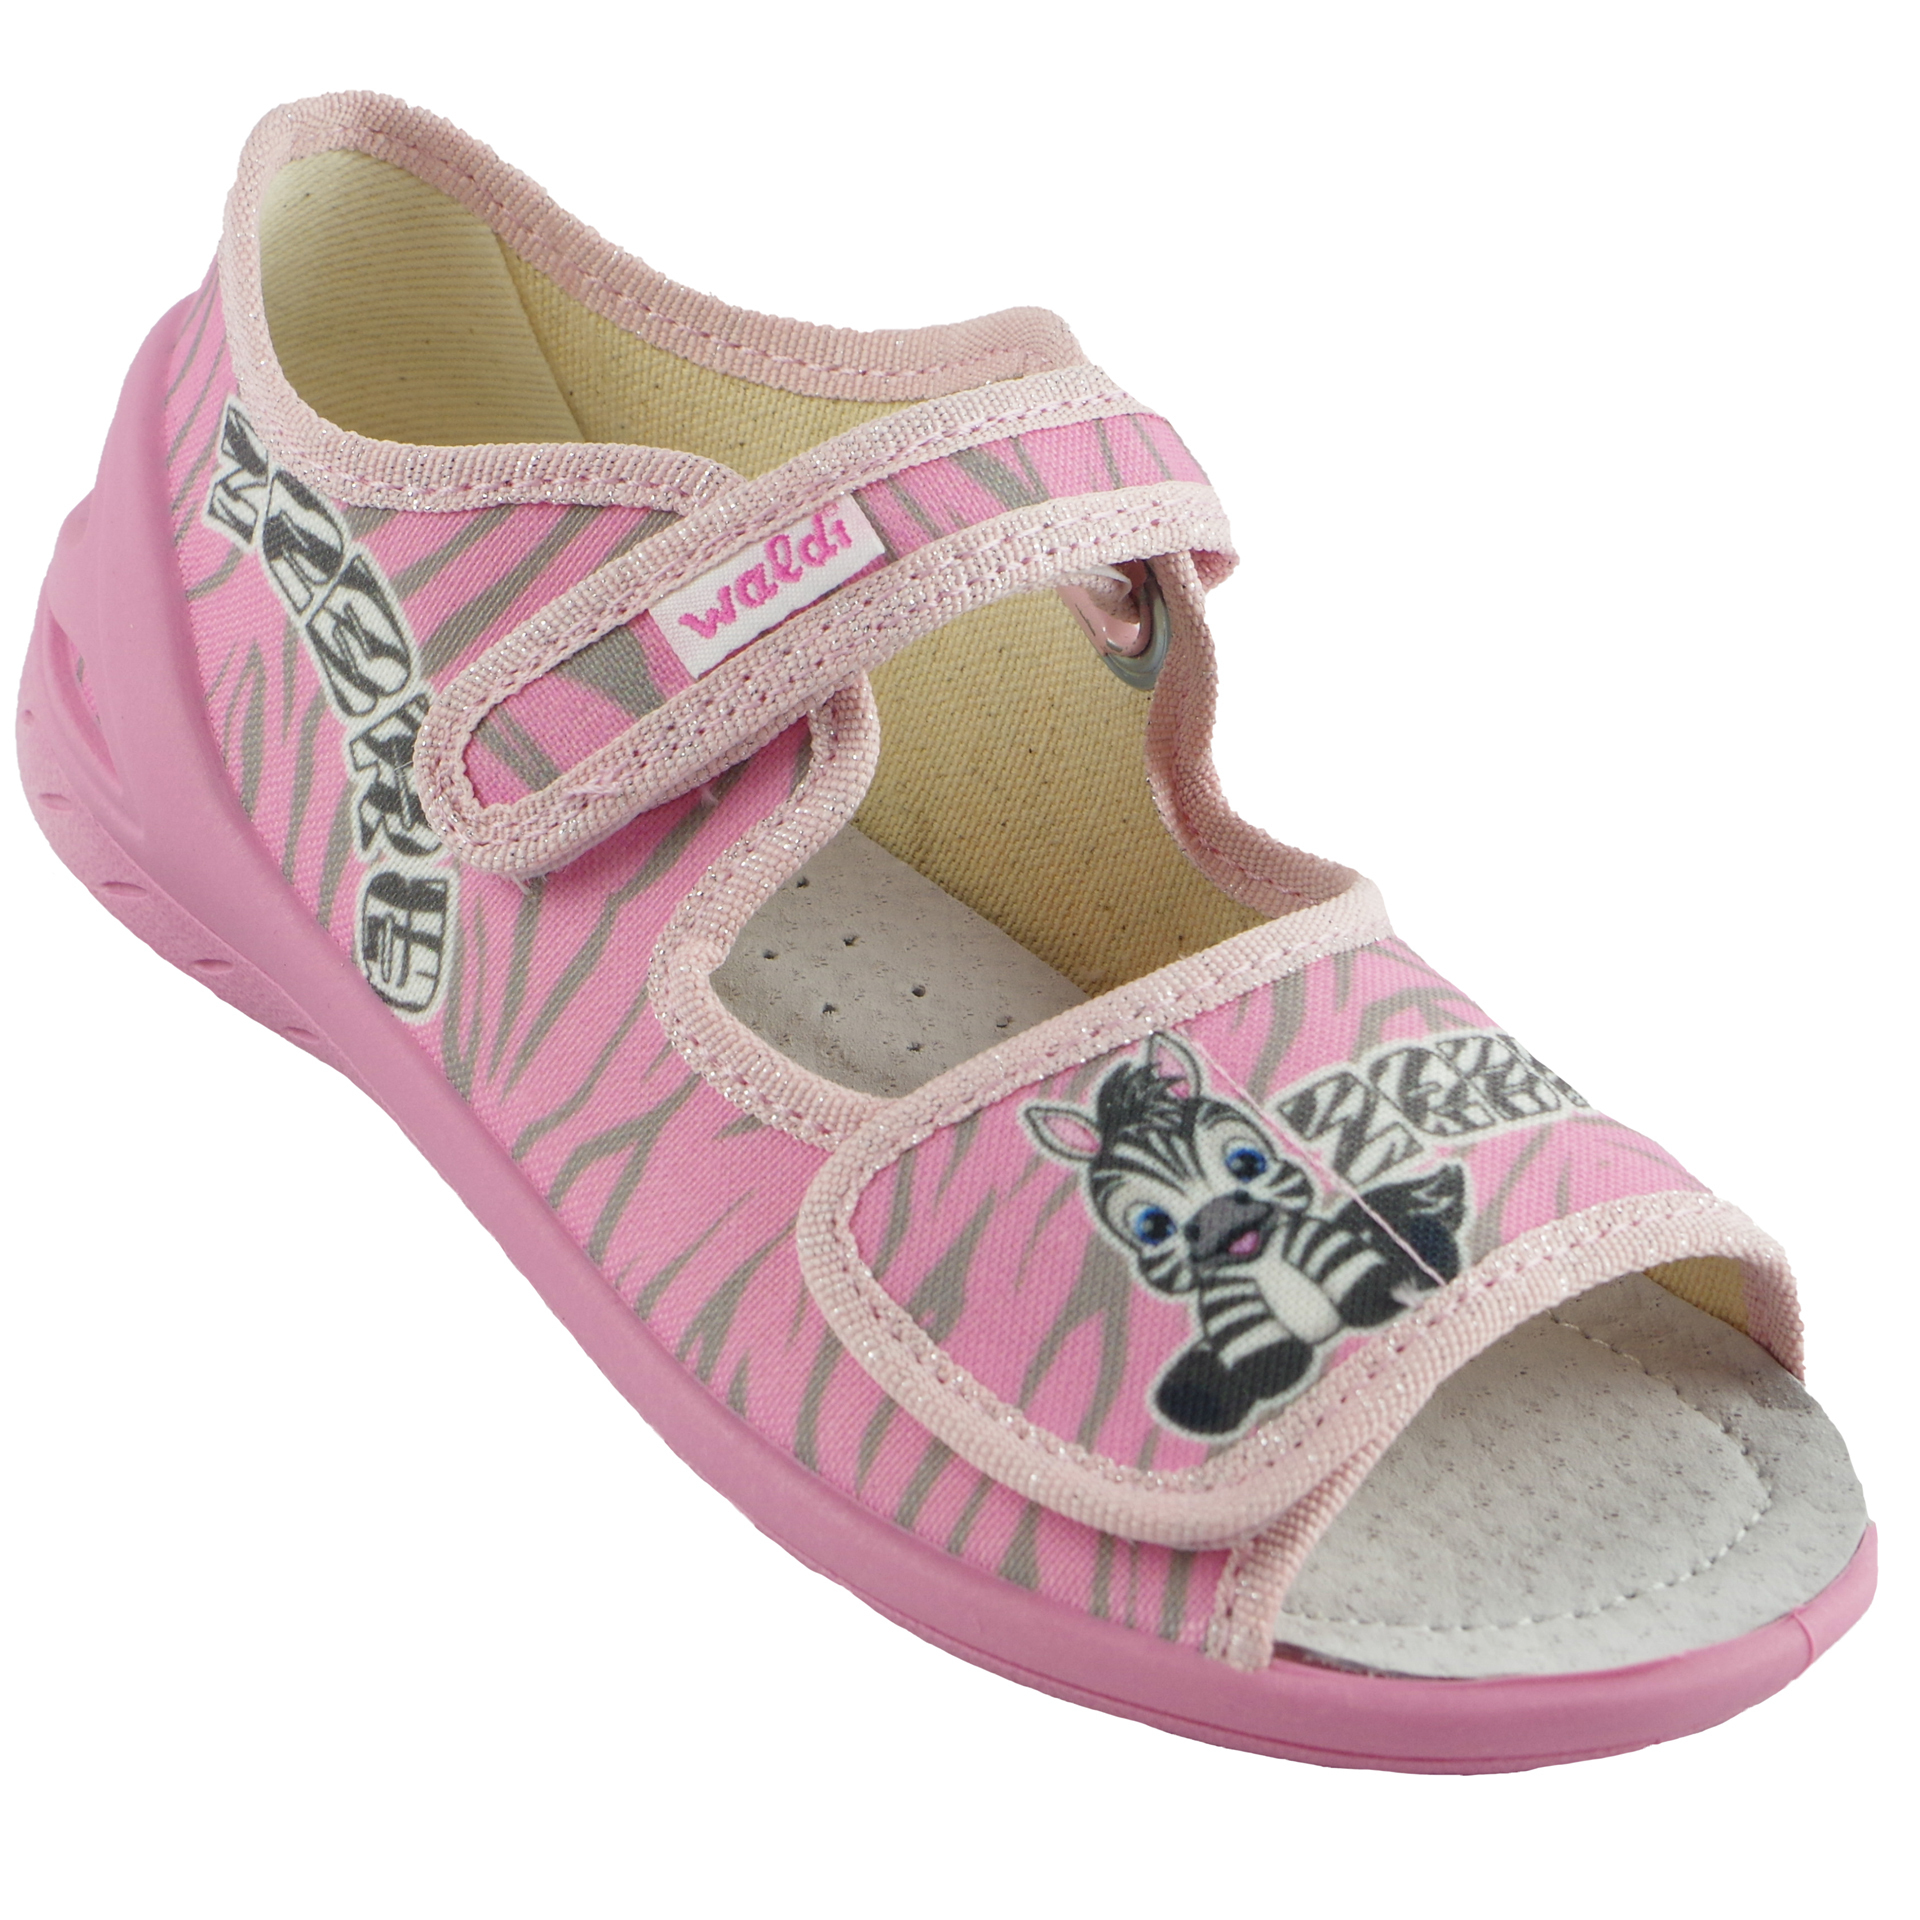 Текстильная обувь для девочек Тапочки детские (1820) цвет Розовый 23-30 размеры – Sole Kids